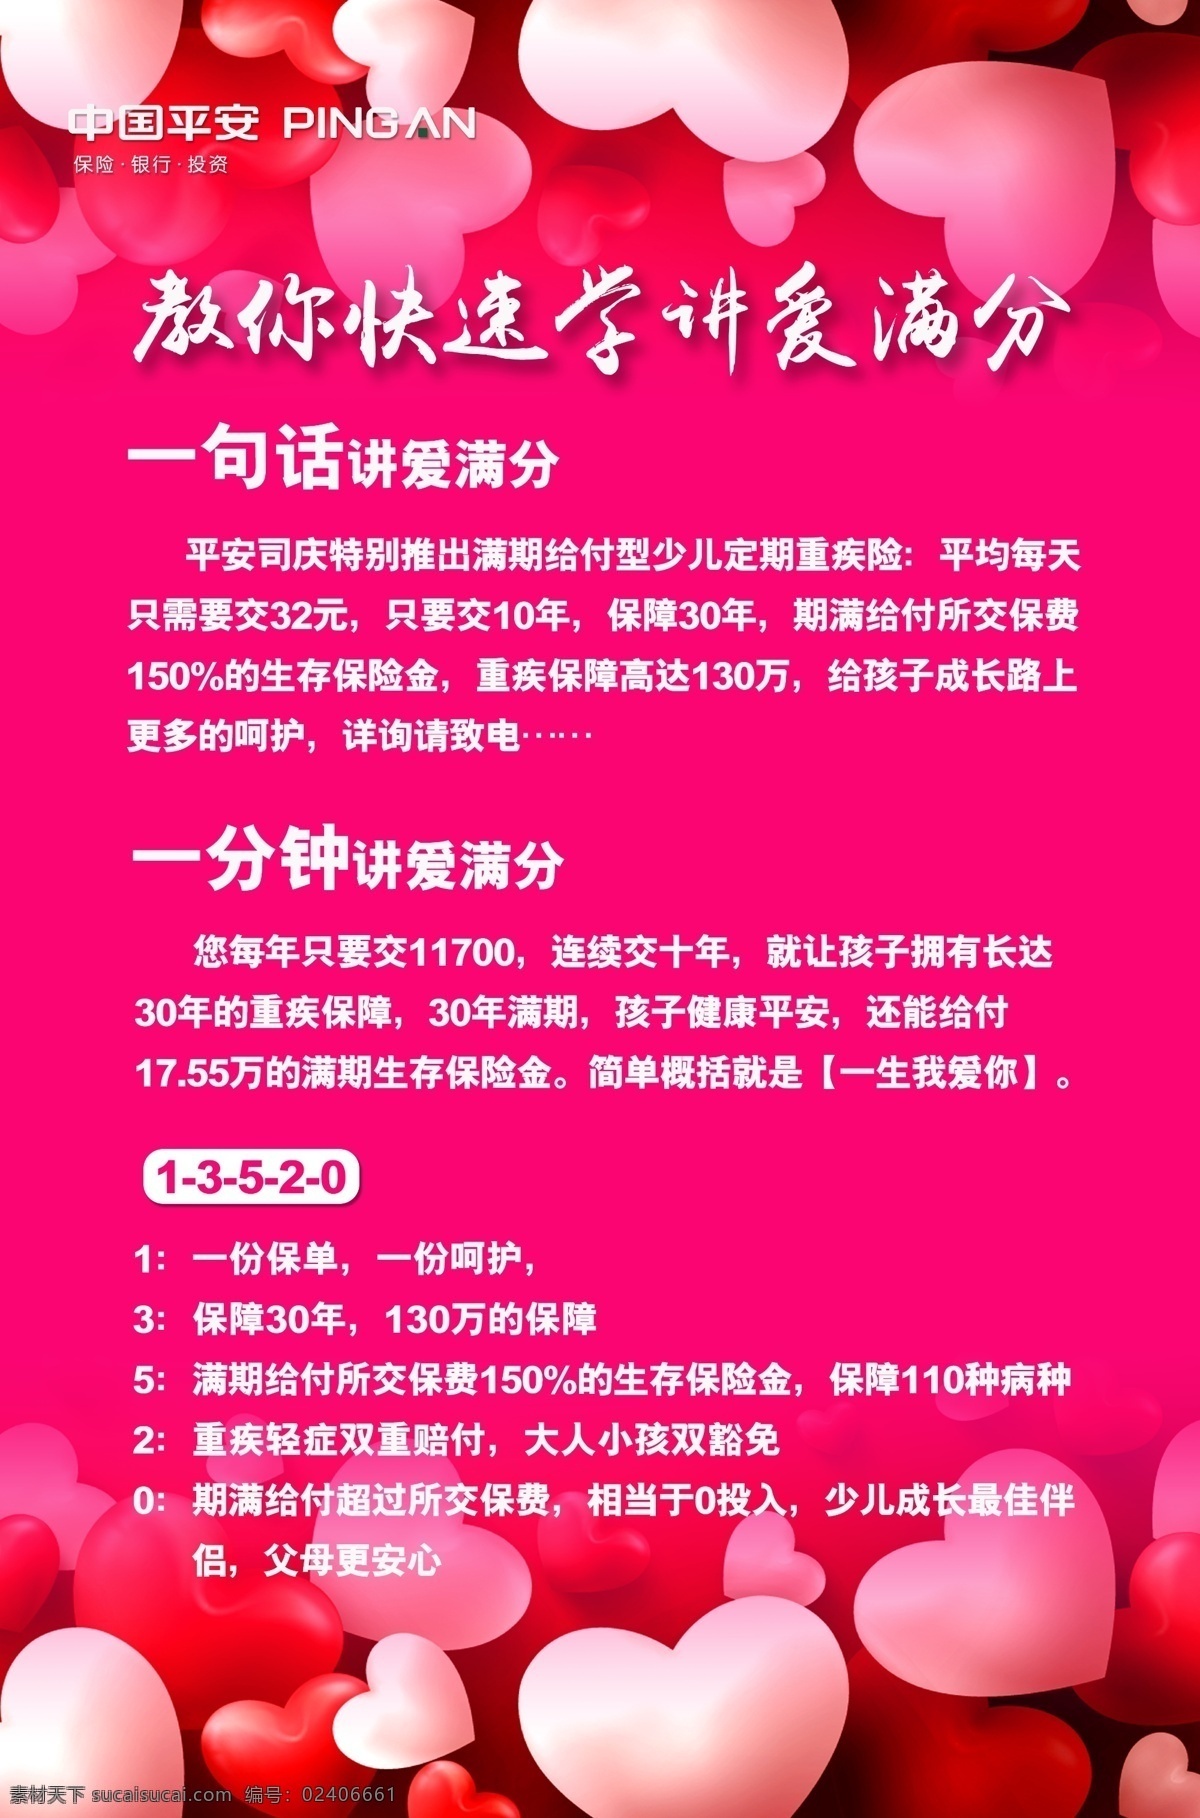 平安海报 中国平安 海报 心 粉红背景 宣传单 矢量图